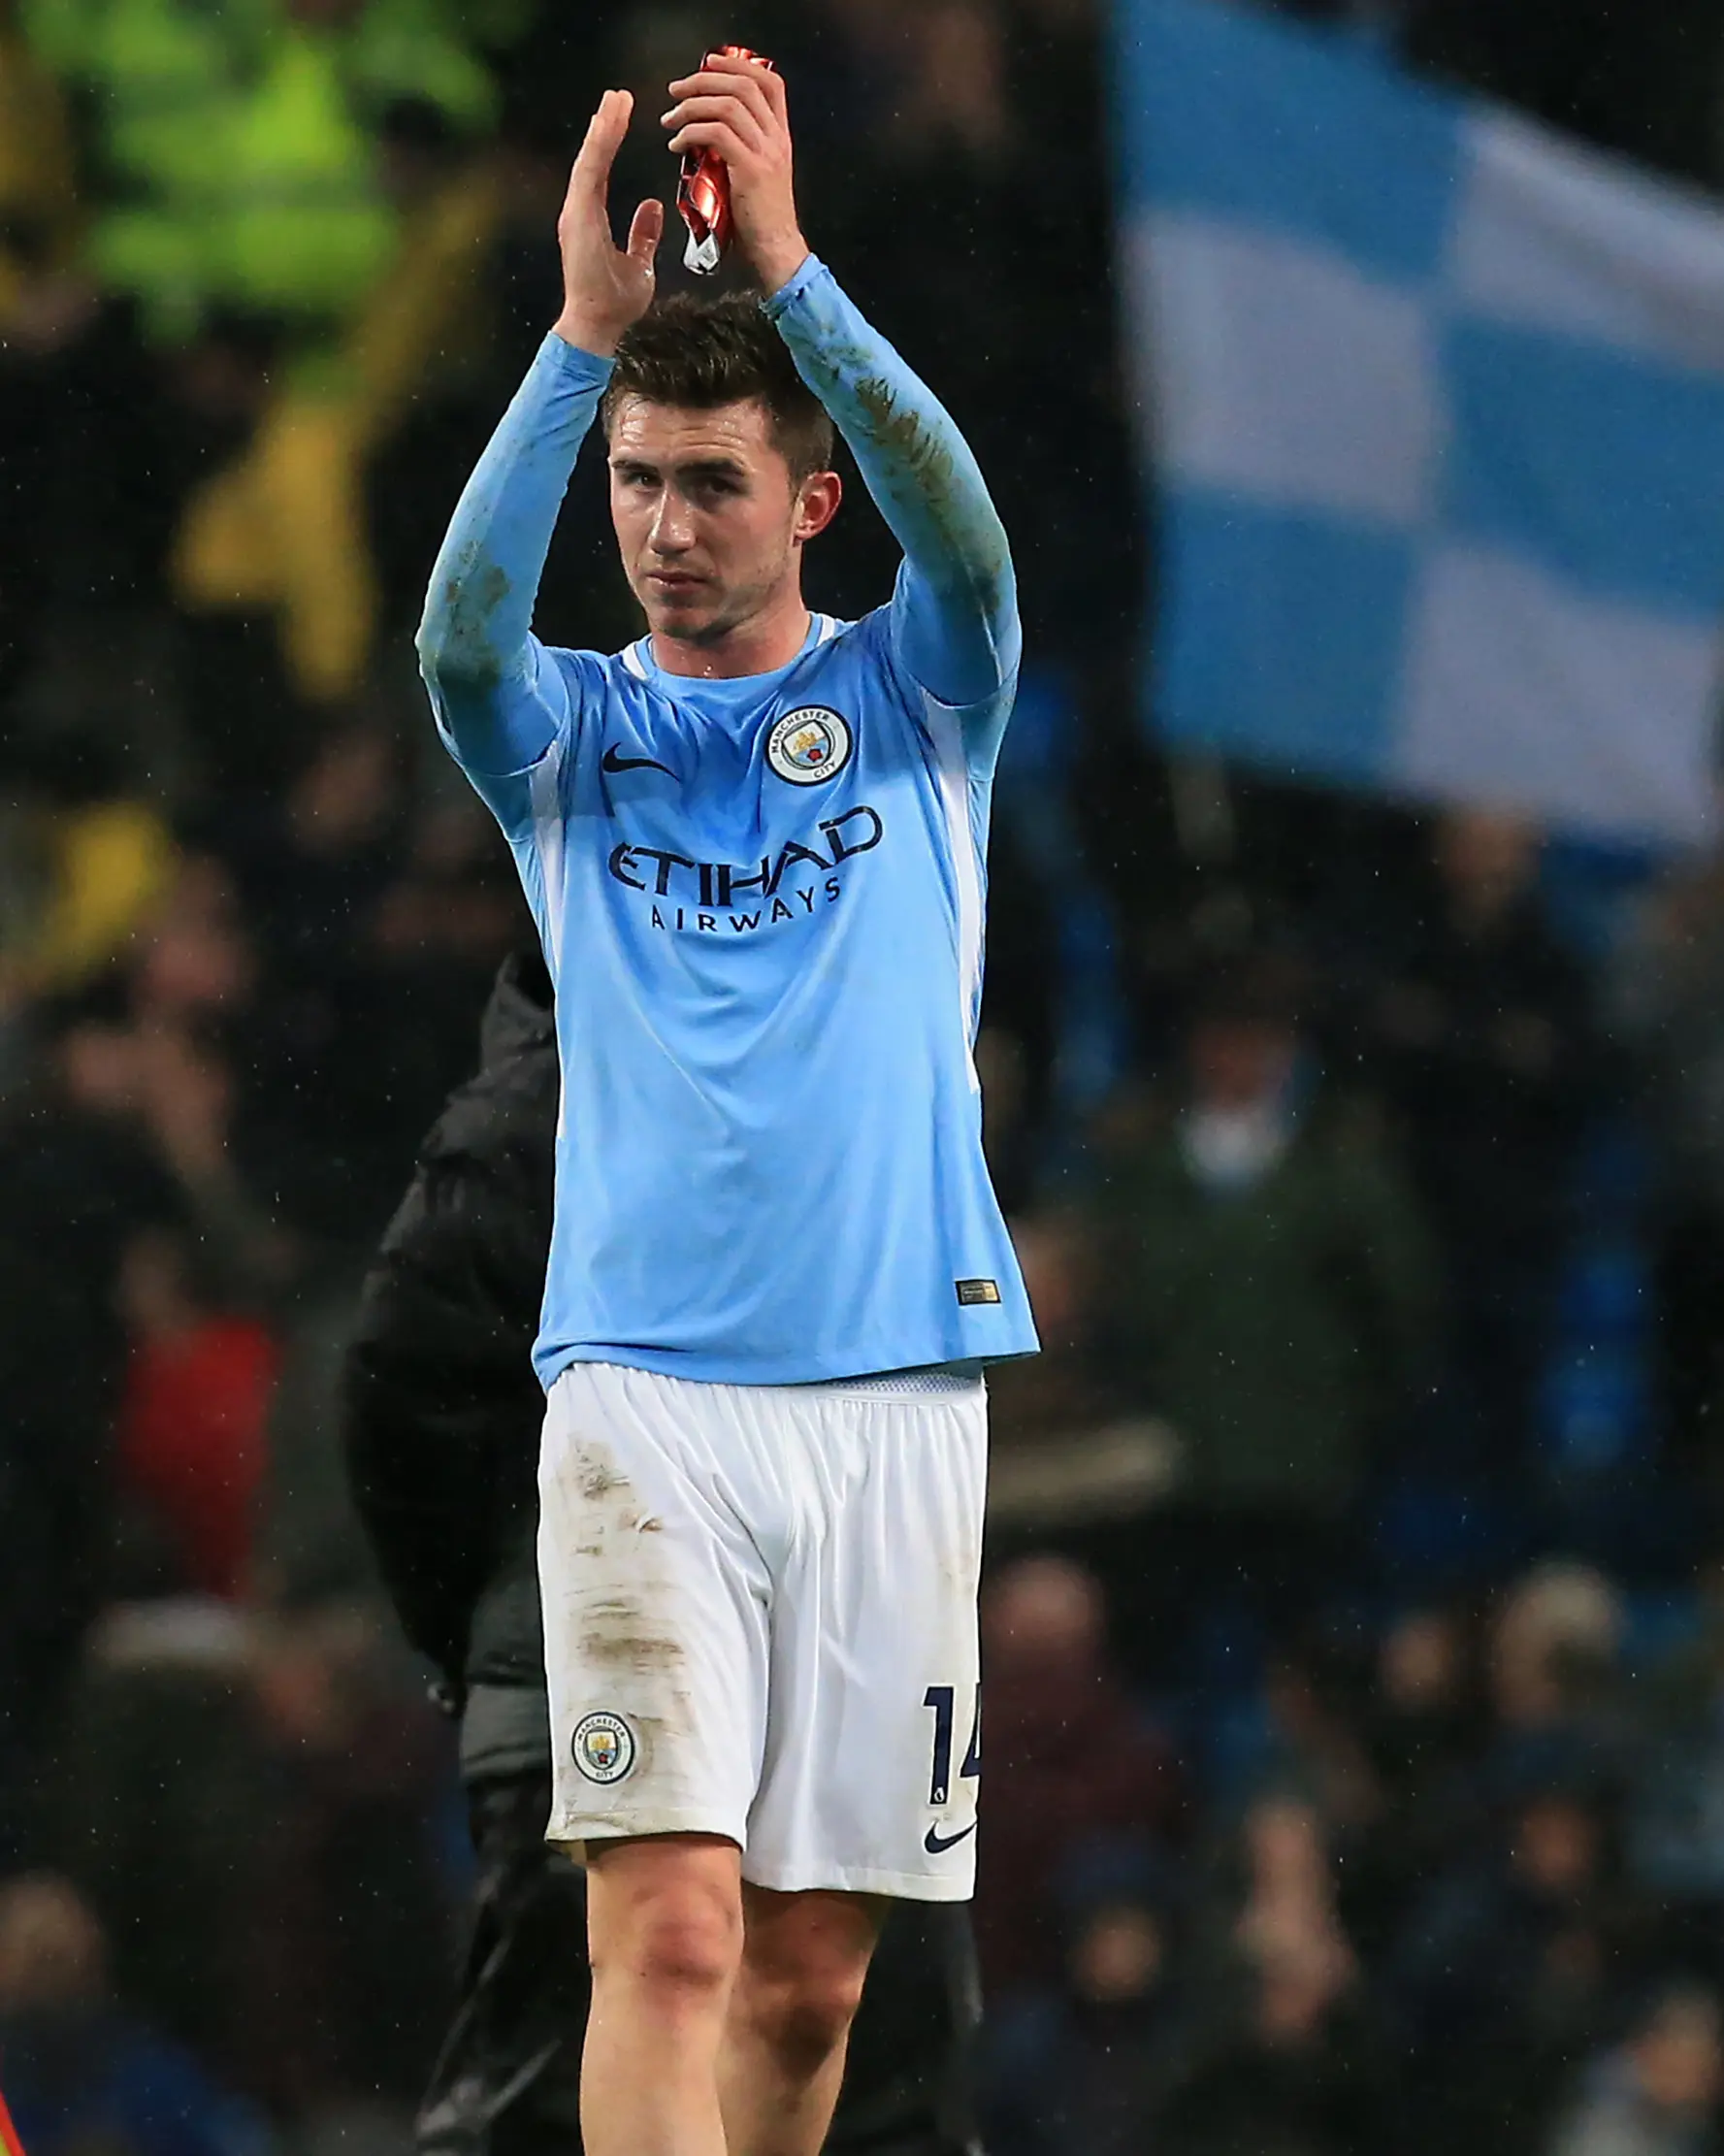 Dibeli Januari 2018, bek Aymeric Laporte jadi pemain termahal sepanjang masa Manchester City. (AFP Photo/Lindsay Parnaby)